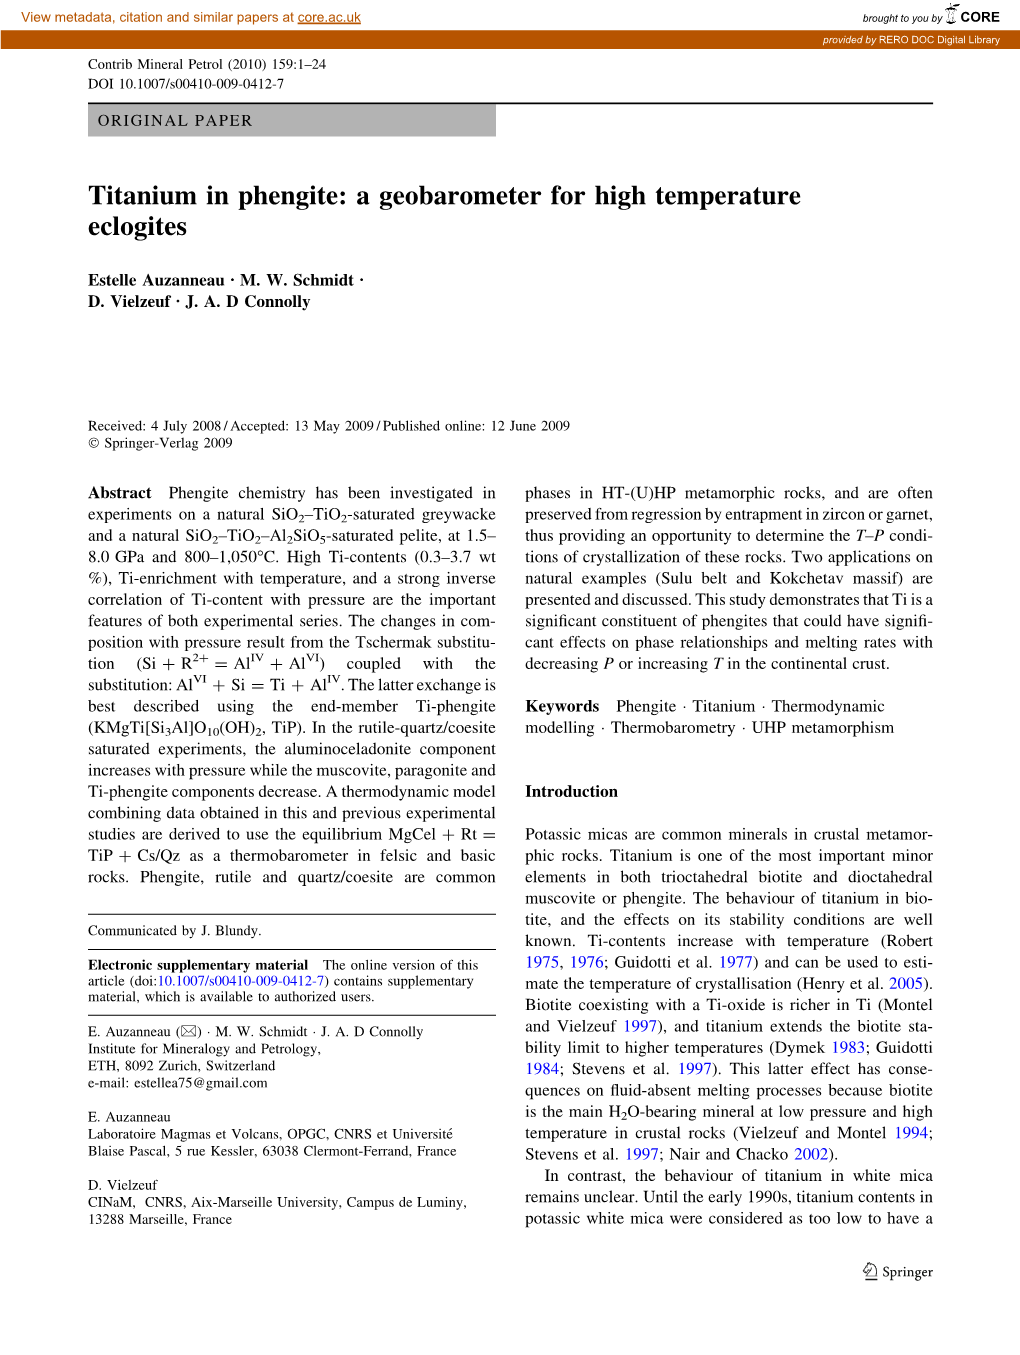 Titanium in Phengite: a Geobarometer for High Temperature Eclogites